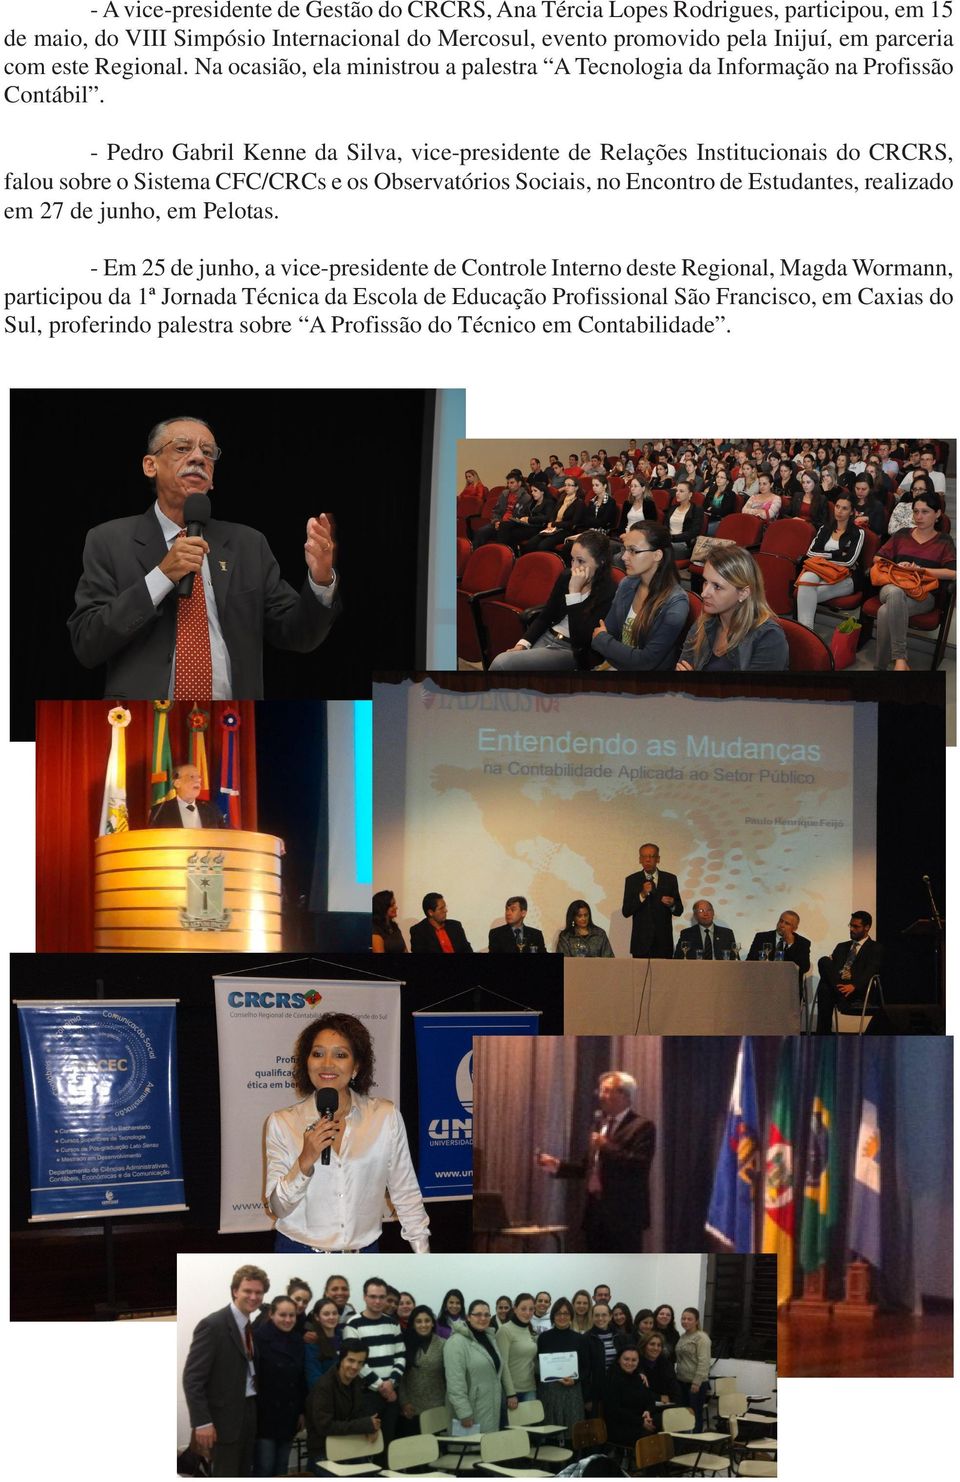 - Pedro Gabril Kenne da Silva, vice-presidente de Relações Institucionais do CRCRS, falou sobre o Sistema CFC/CRCs e os Observatórios Sociais, no Encontro de Estudantes, realizado em 27